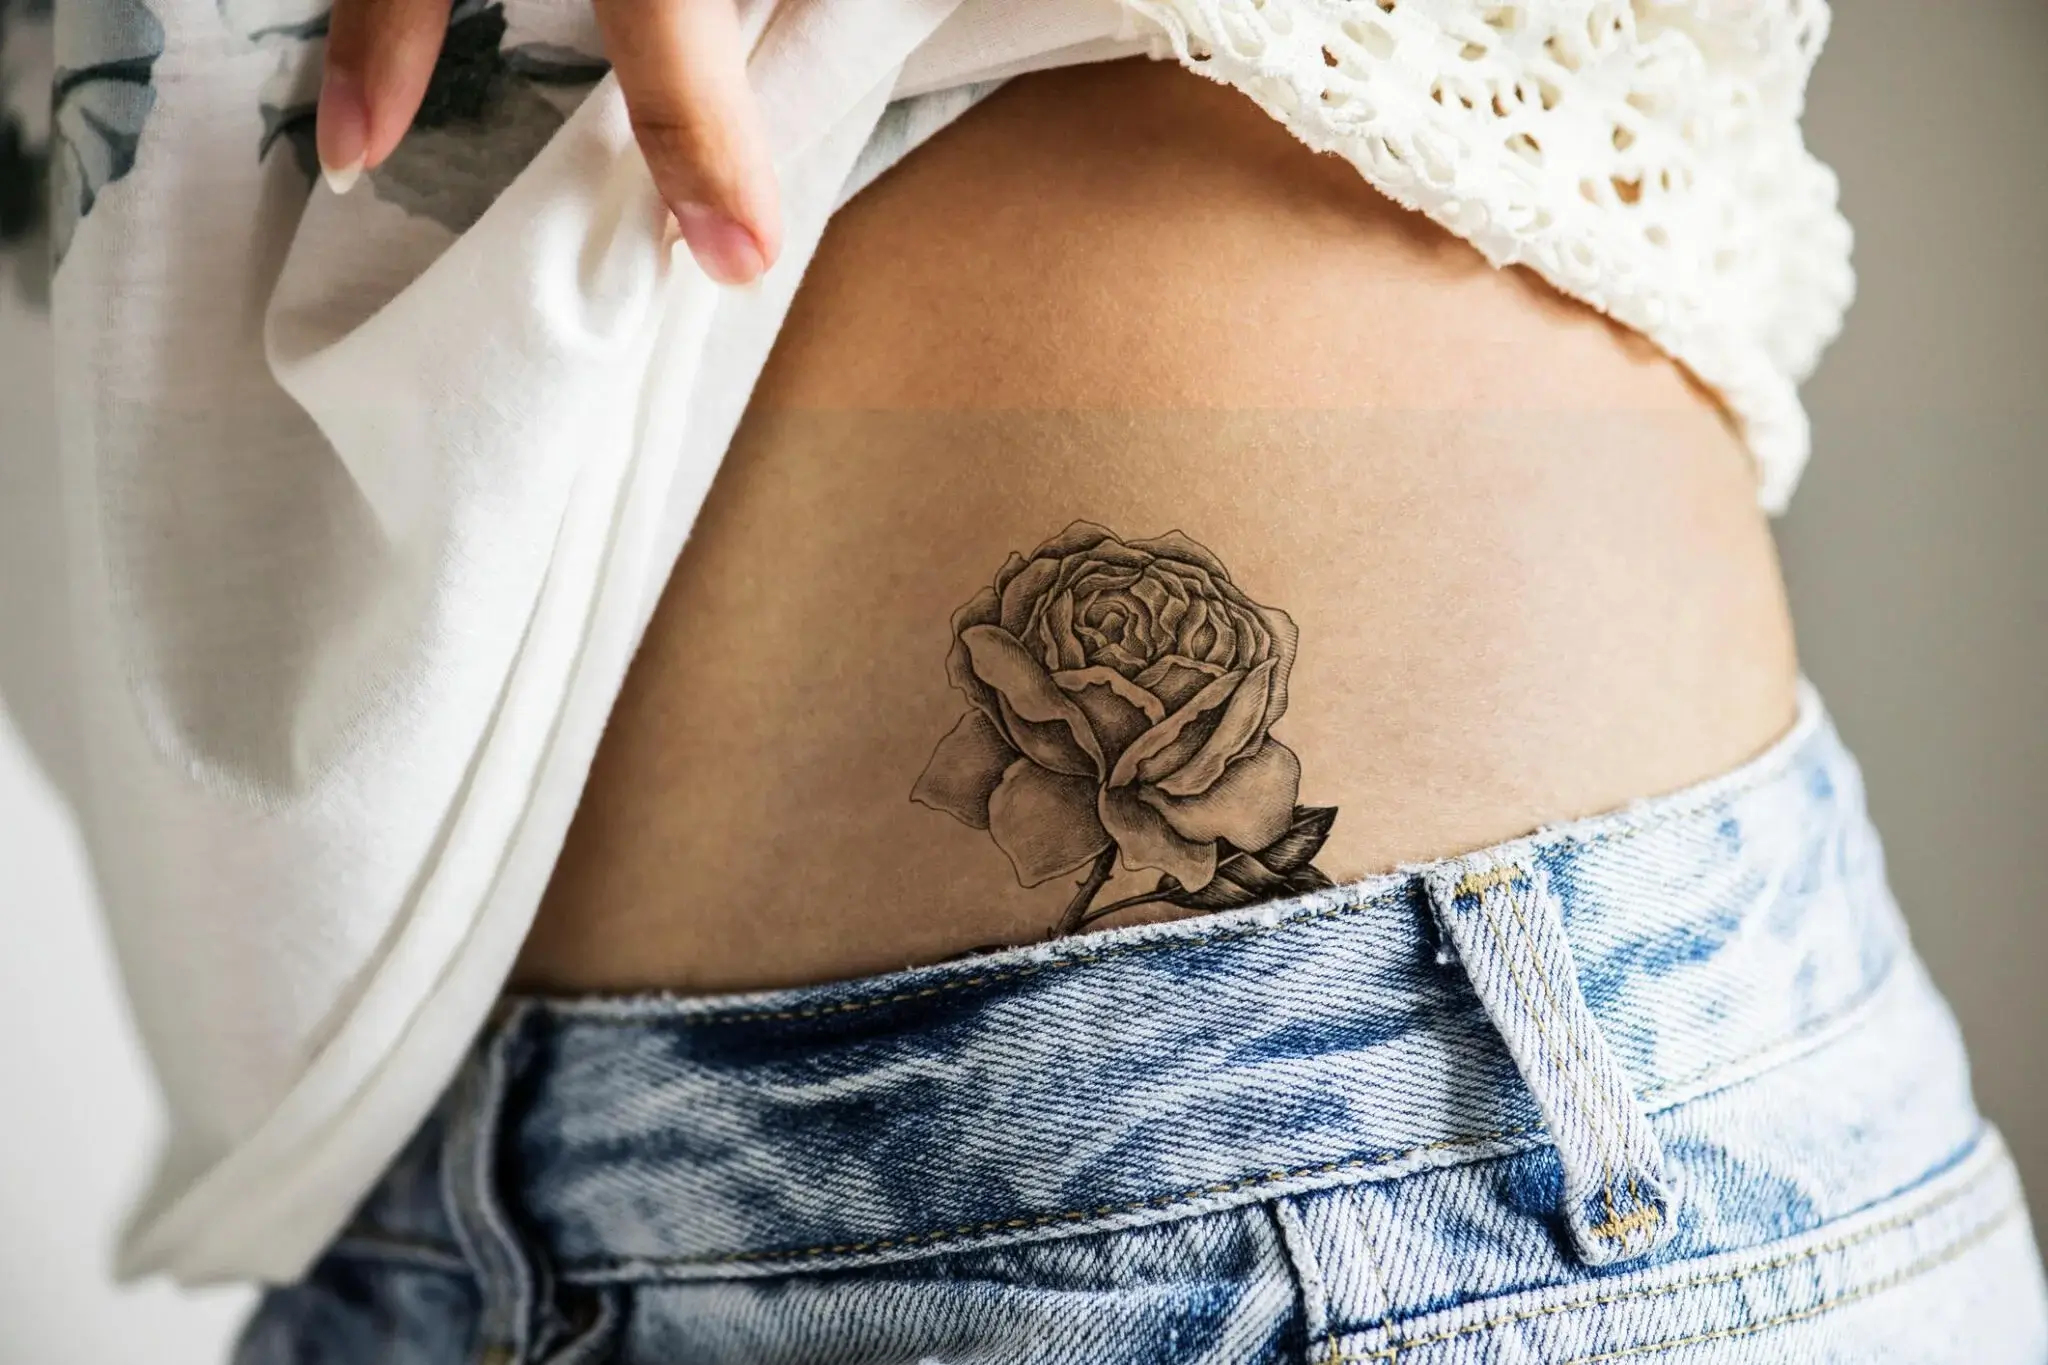 Ten Things Not To Do When Healing Tattoos